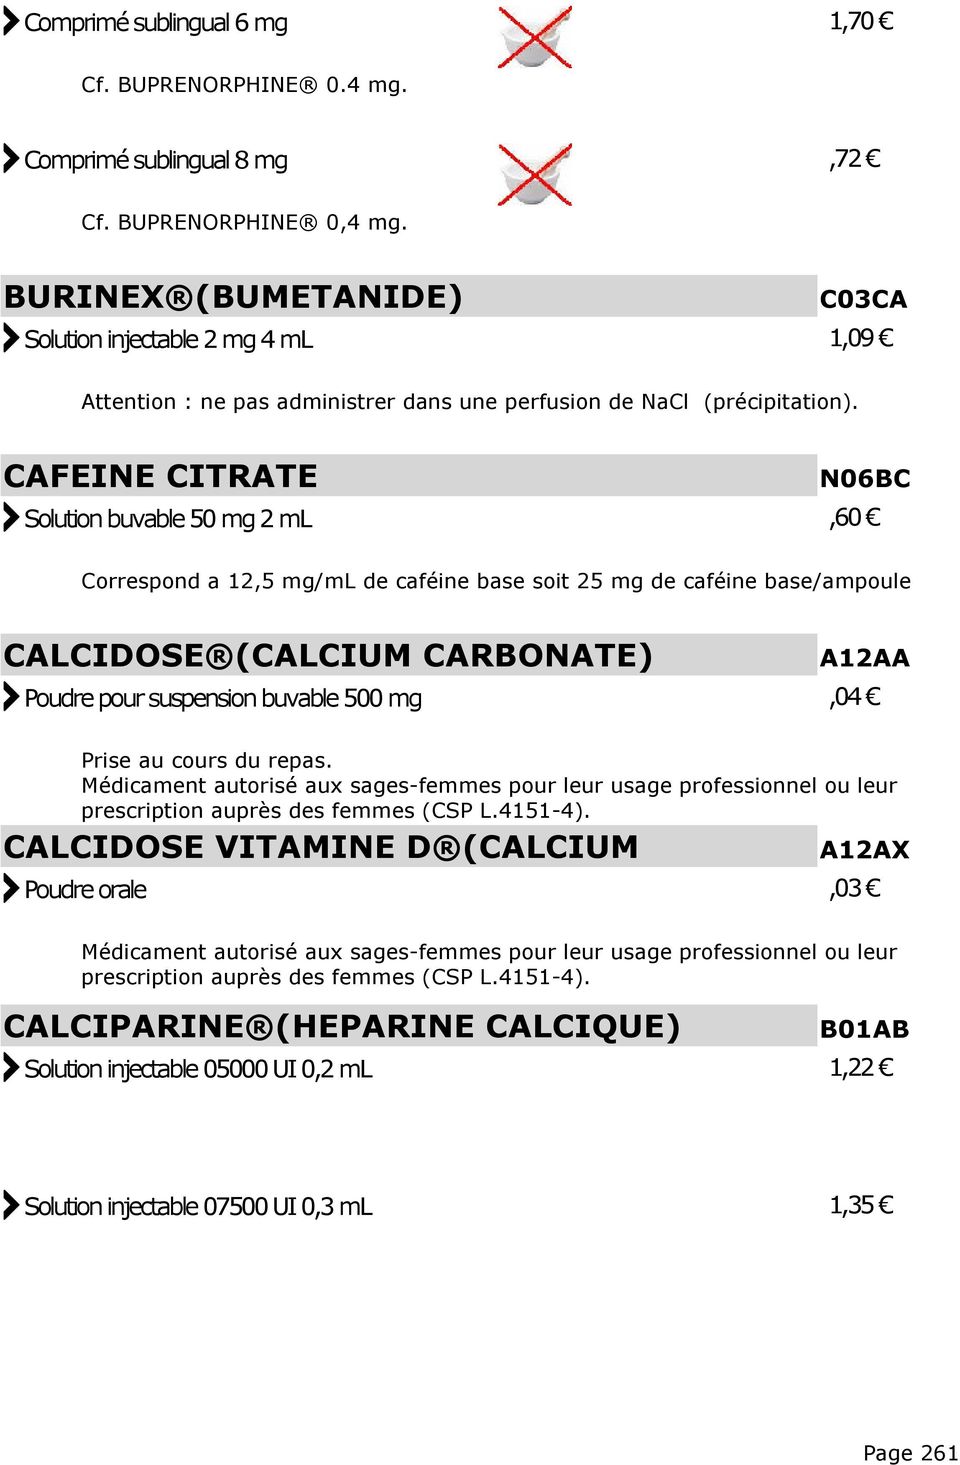 CAFEINE CITRATE N06BC Solution buvable 50 mg 2 ml,60 Correspond a 12,5 mg/ml de caféine base soit 25 mg de caféine base/ampoule CALCIDOSE (CALCIUM CARBONATE) A12AA Poudre